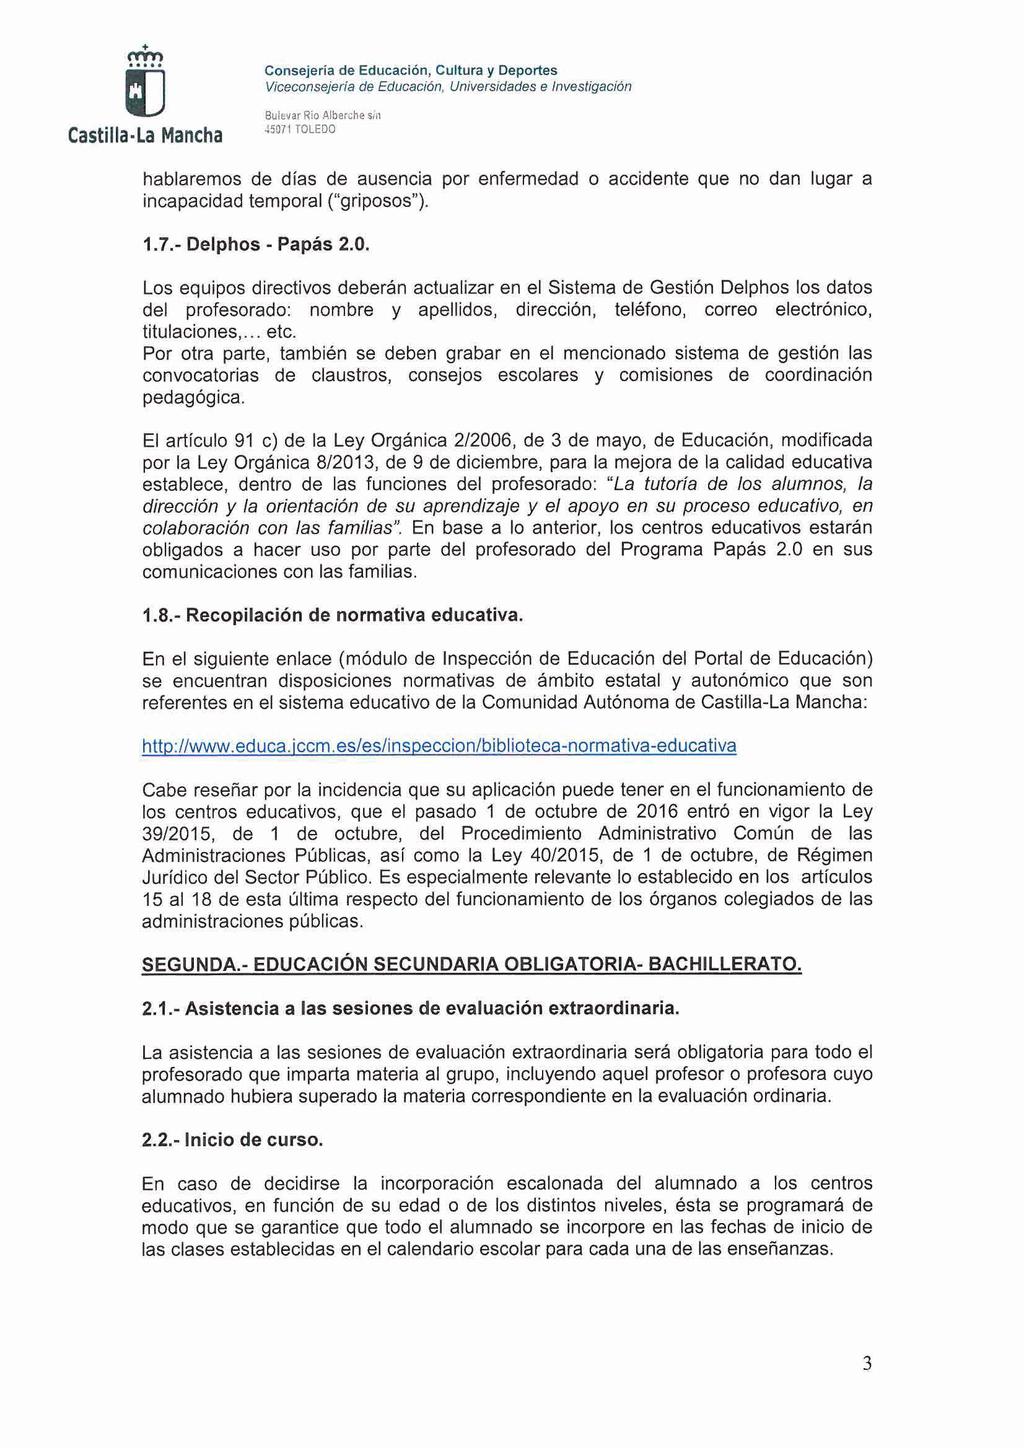 Consejerla de Educaclán, Cultura y Deportes Viceconsqerla de Eduoacidn, Universfda&s e Invesligacian Castilla.